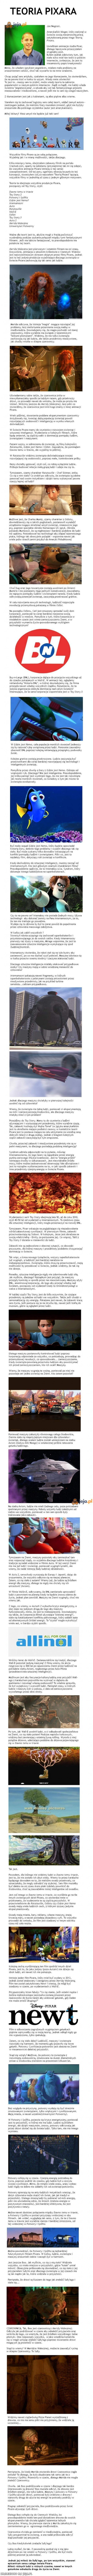 Teoria Pixara